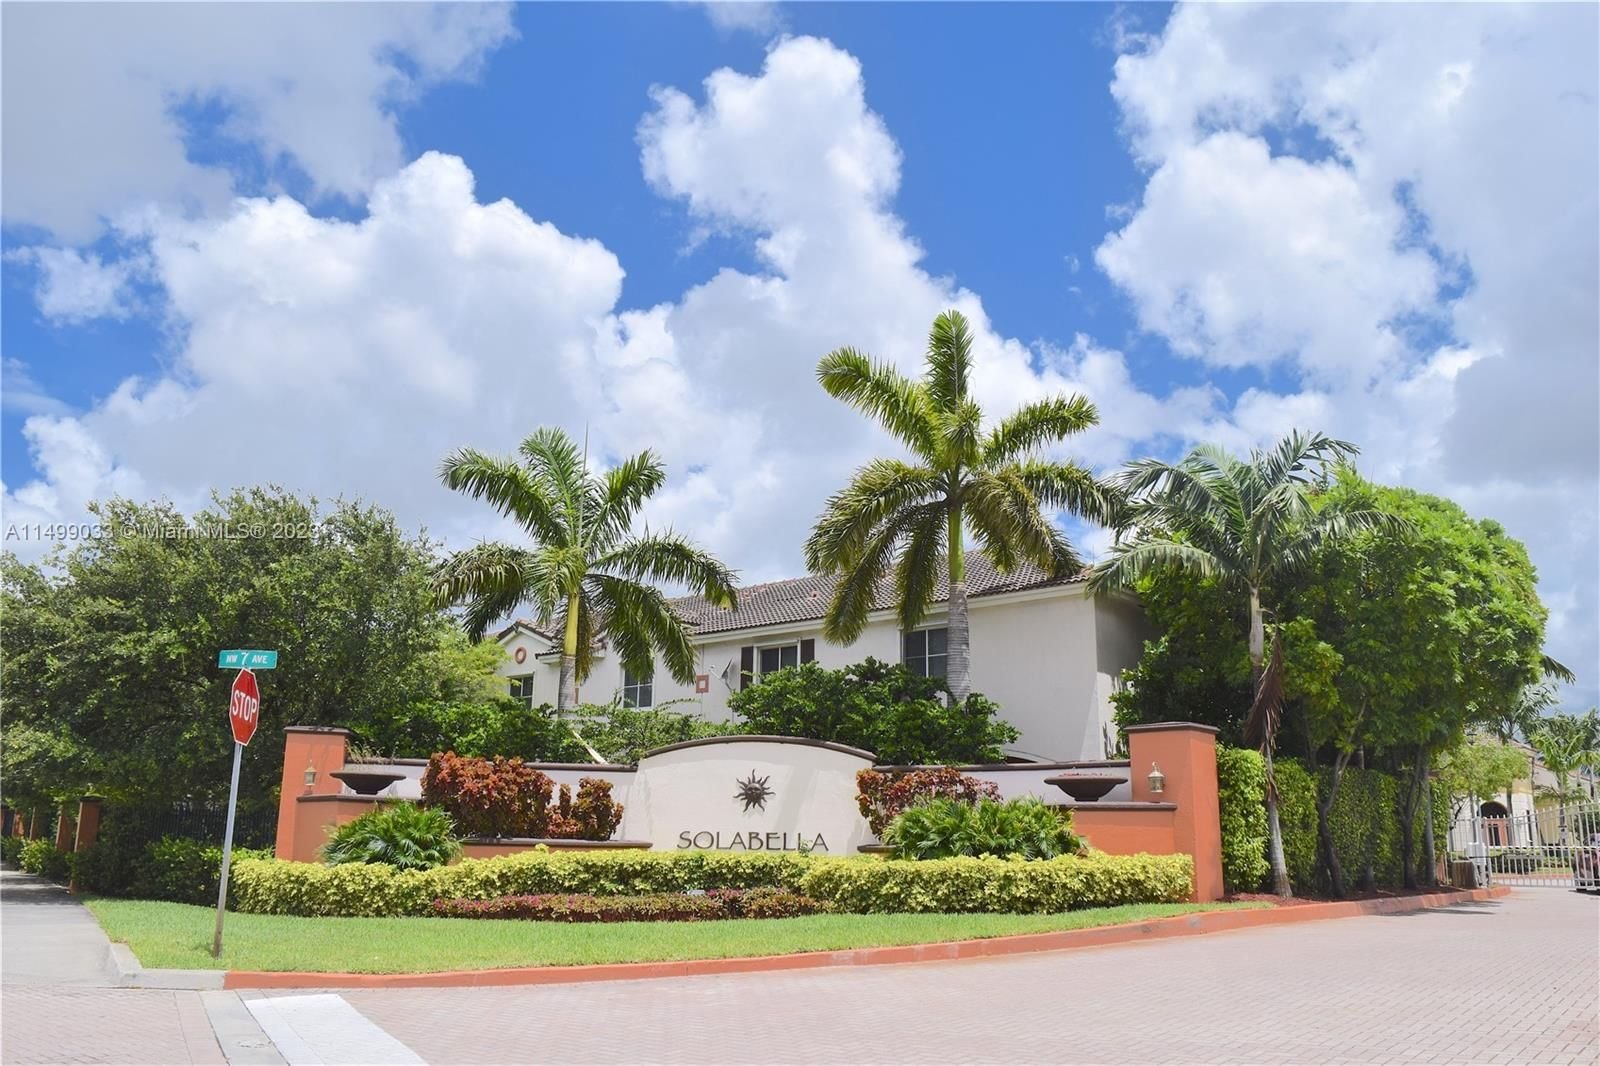 Real estate property located at 17337 7th Ave #402, Miami-Dade County, SOLABELLA CONDO, Miami Gardens, FL